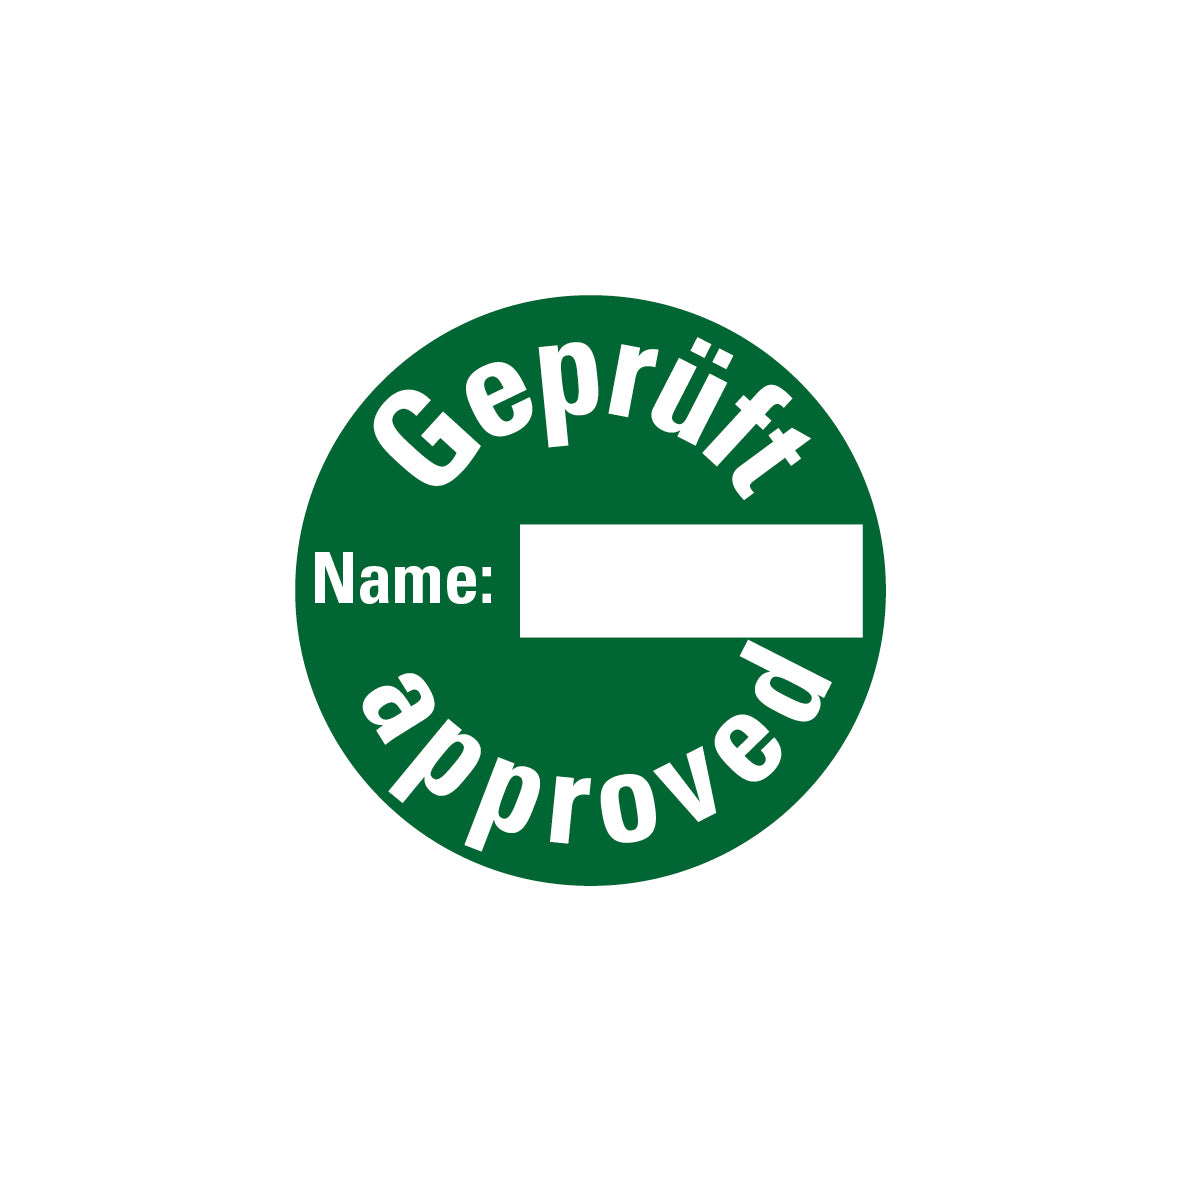 Qualitätskennzeichen, Geprüft Name: approved